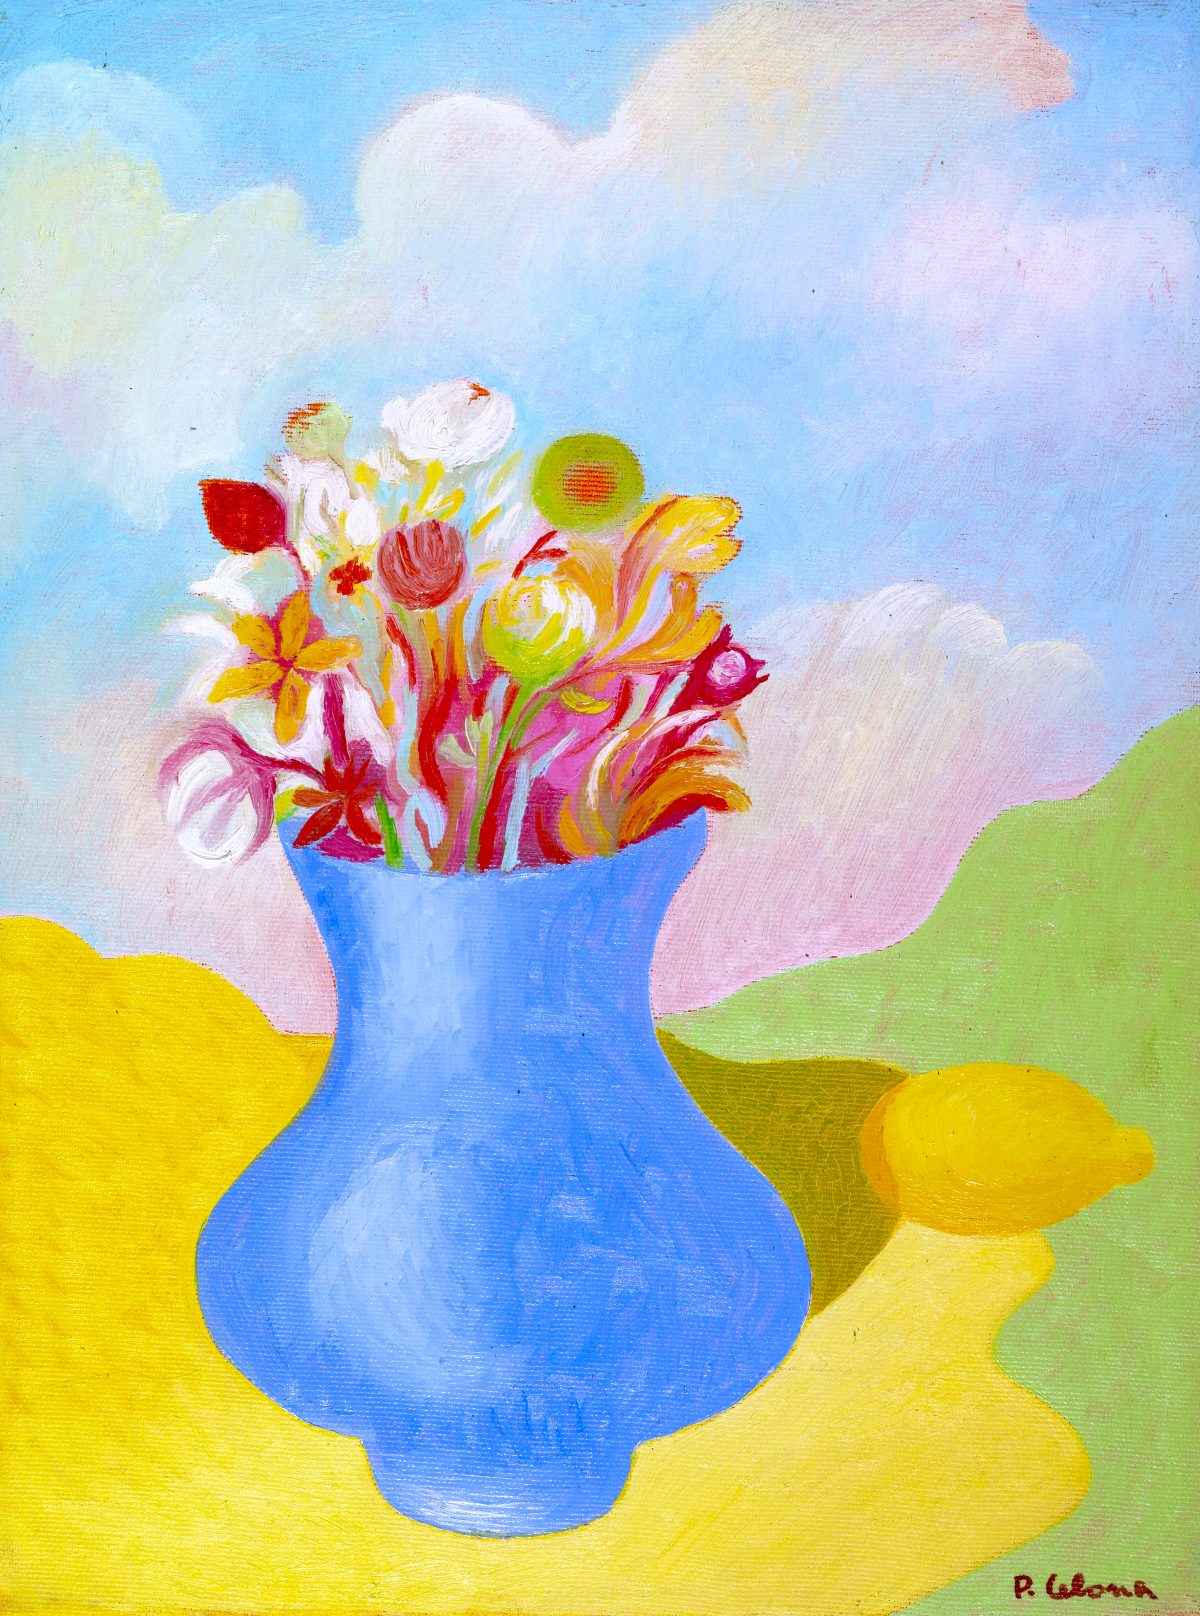 Vaso e fiori con limone, ca. 1995
Olio su tela, 50 x 40 cm,
Collezione privata,
NMV303